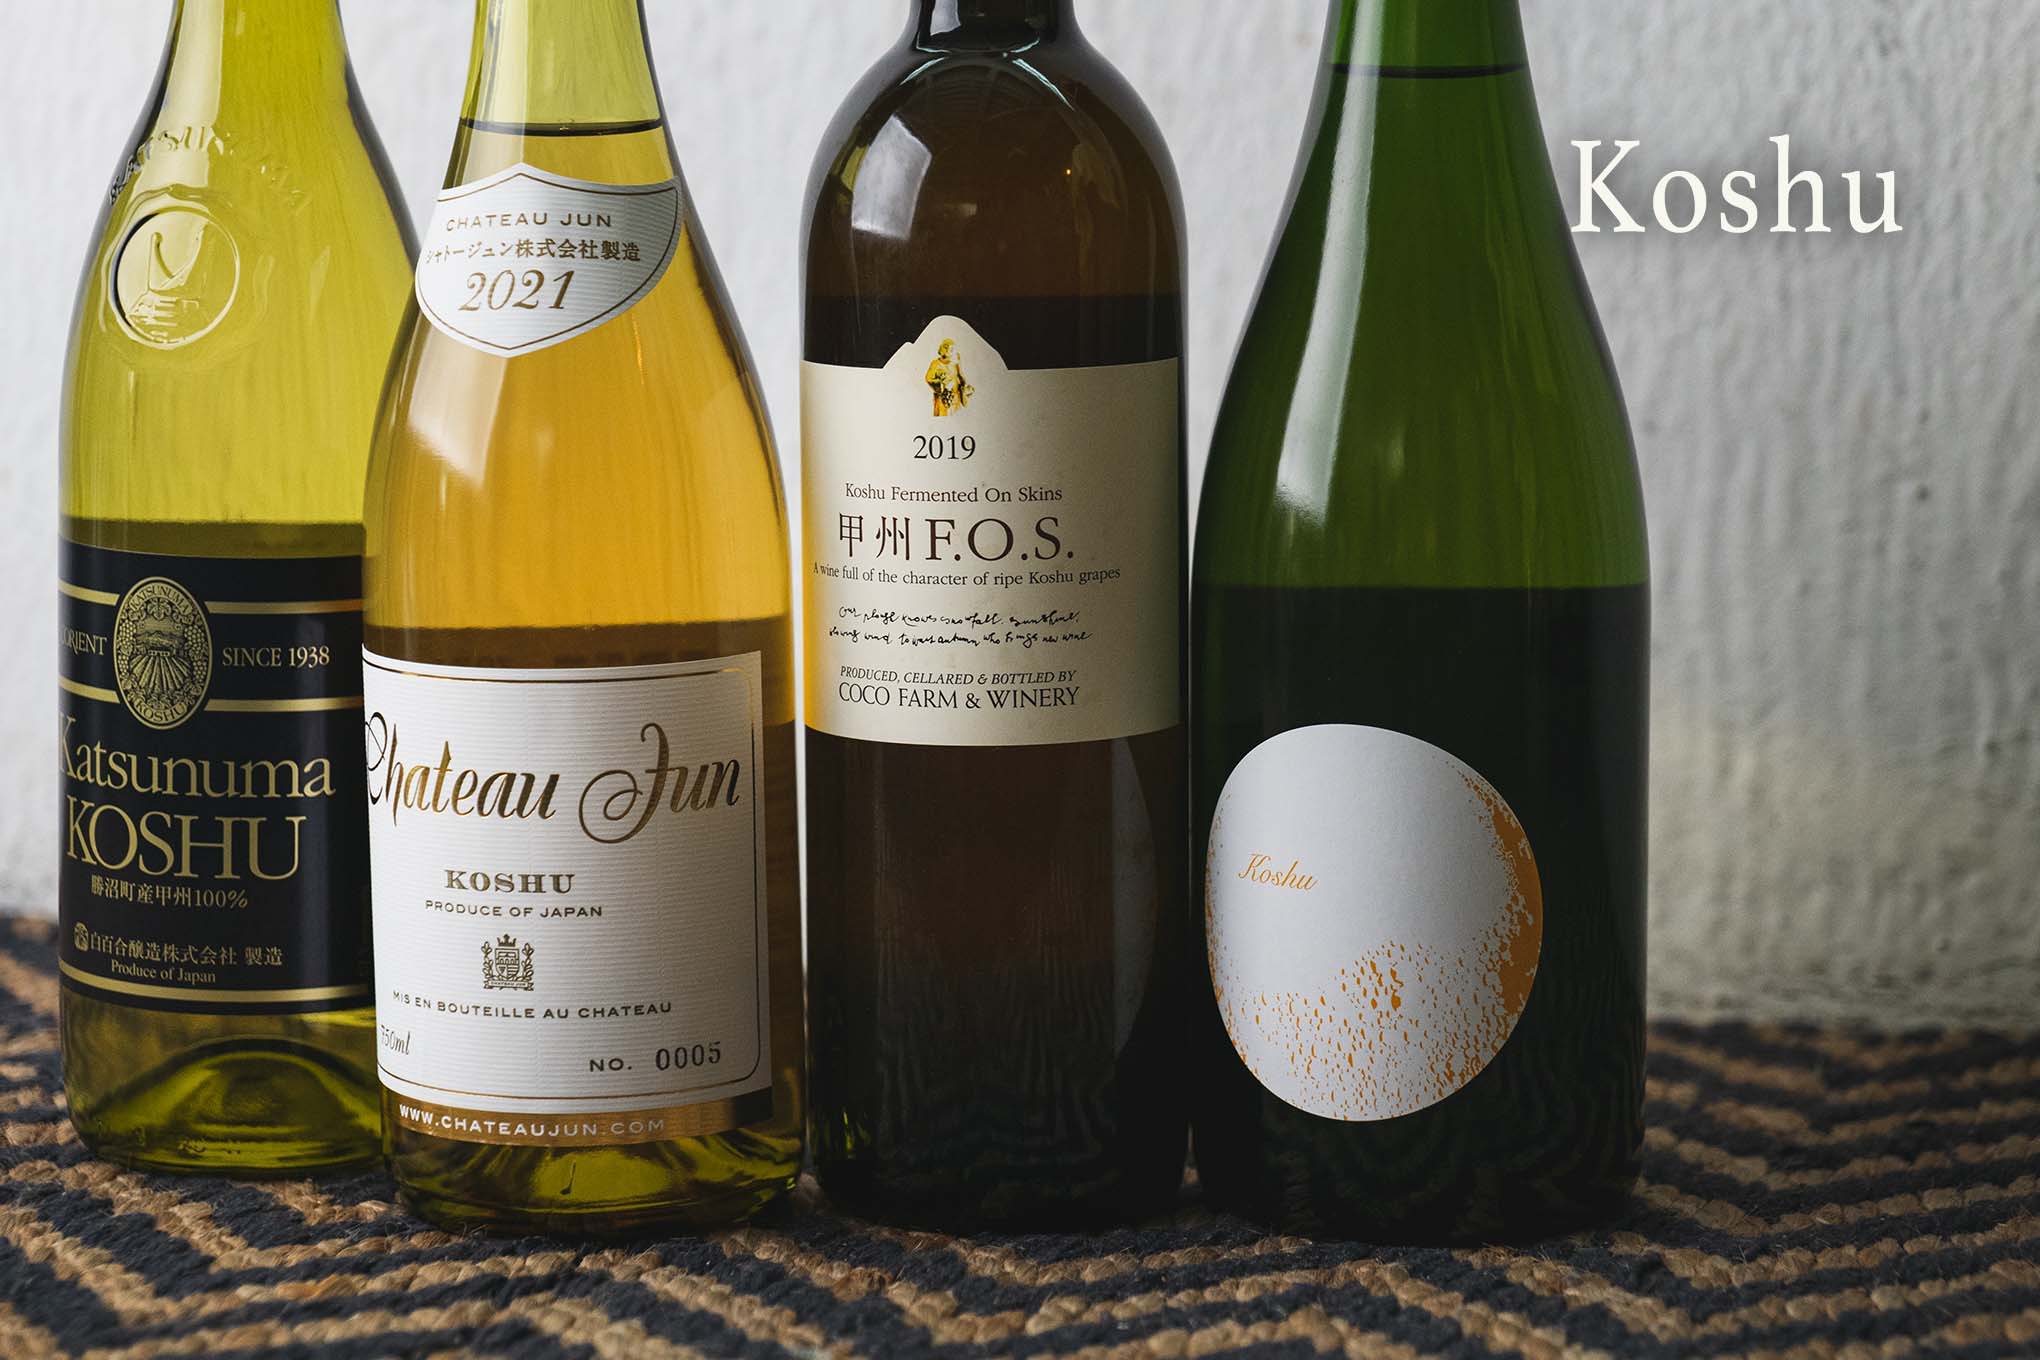 世界にもその名を馳せる、日本ワインの最重要品種「甲州」。和食に合うのはもちろんのこと、さまざまな顔を持つ日進月歩のその進化を、ぜひ見届けて！